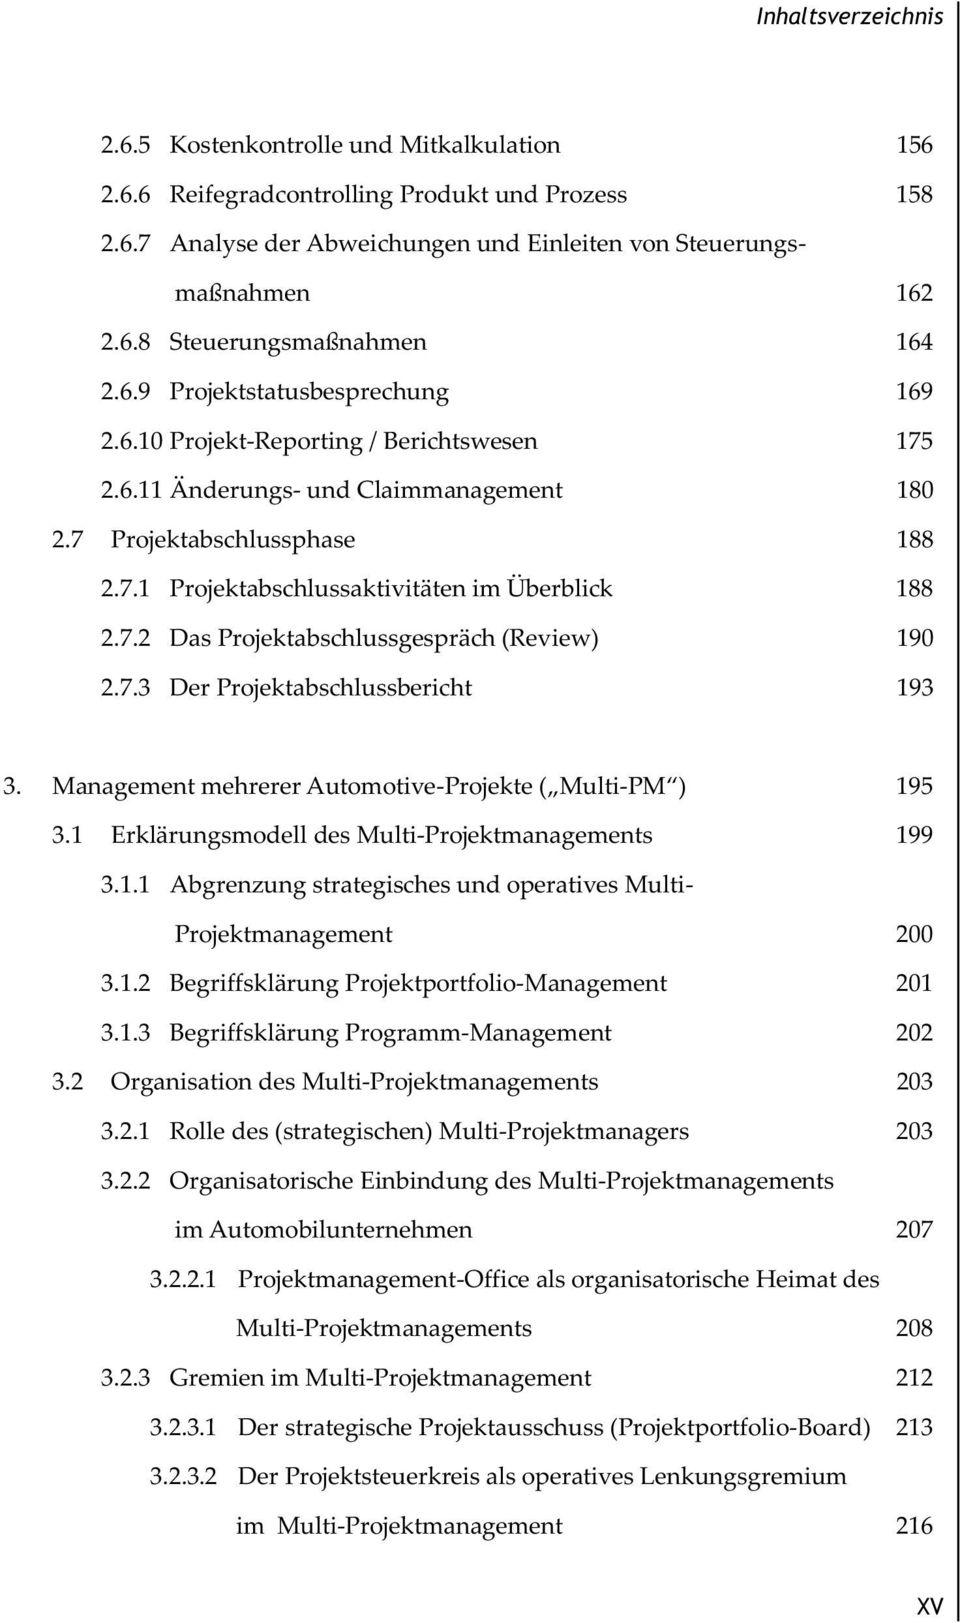 7.2 Das Projektabschlussgespräch (Review) 190 2.7.3 Der Projektabschlussbericht 193 3. Management mehrerer Automotive-Projekte ( Multi-PM ) 195 3.1 Erklärungsmodell des Multi-Projektmanagements 199 3.